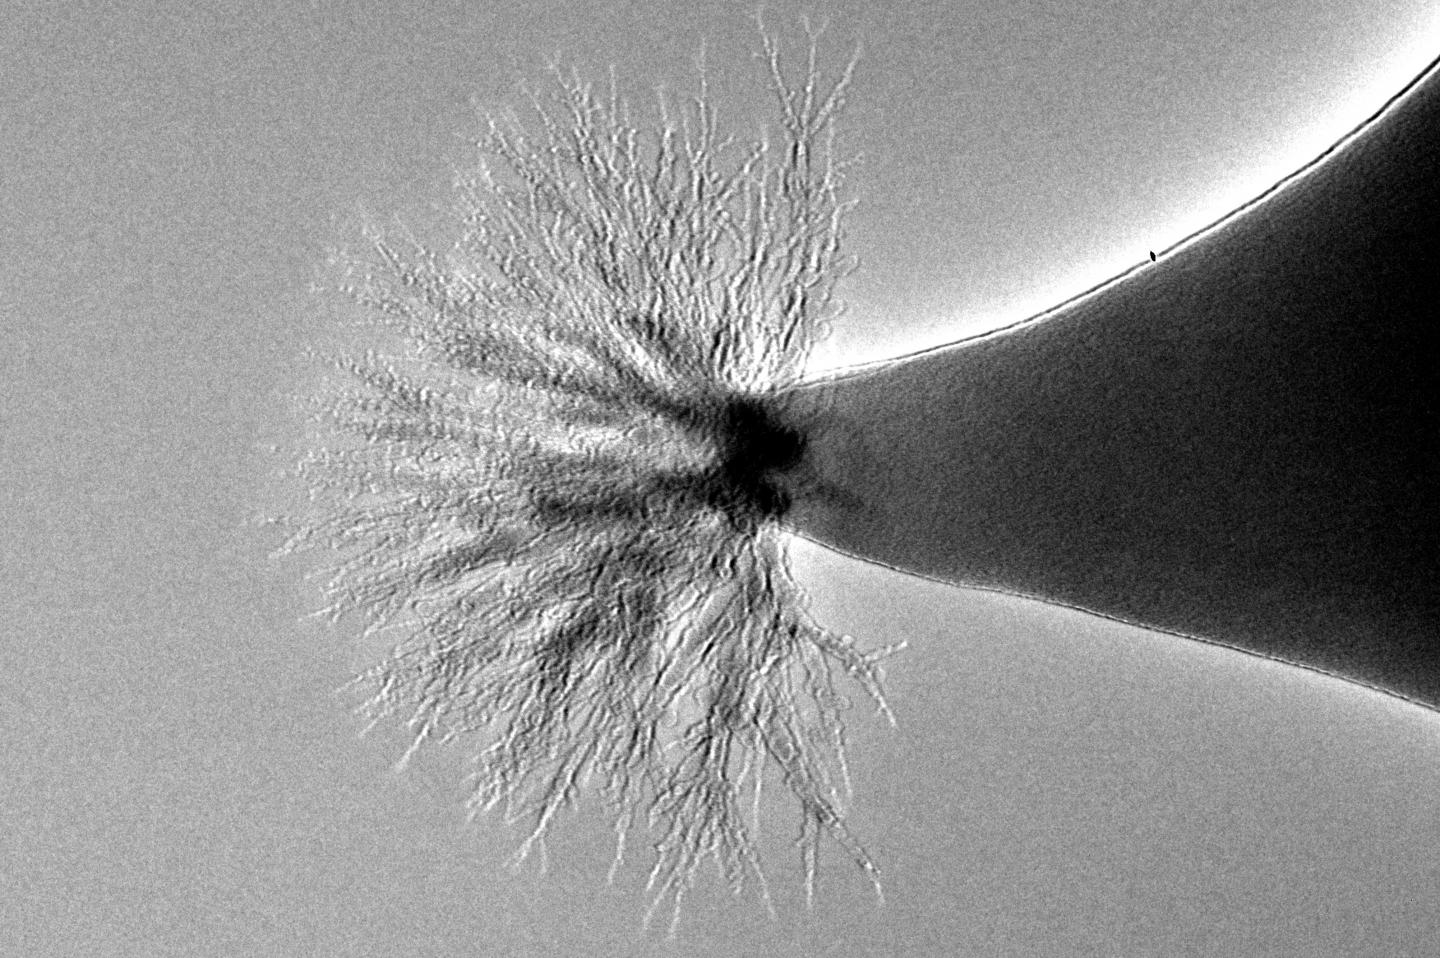 Gli ioni si diramano con una forma ad albero. Crediti: Michigan Tech, Kurt Terhune